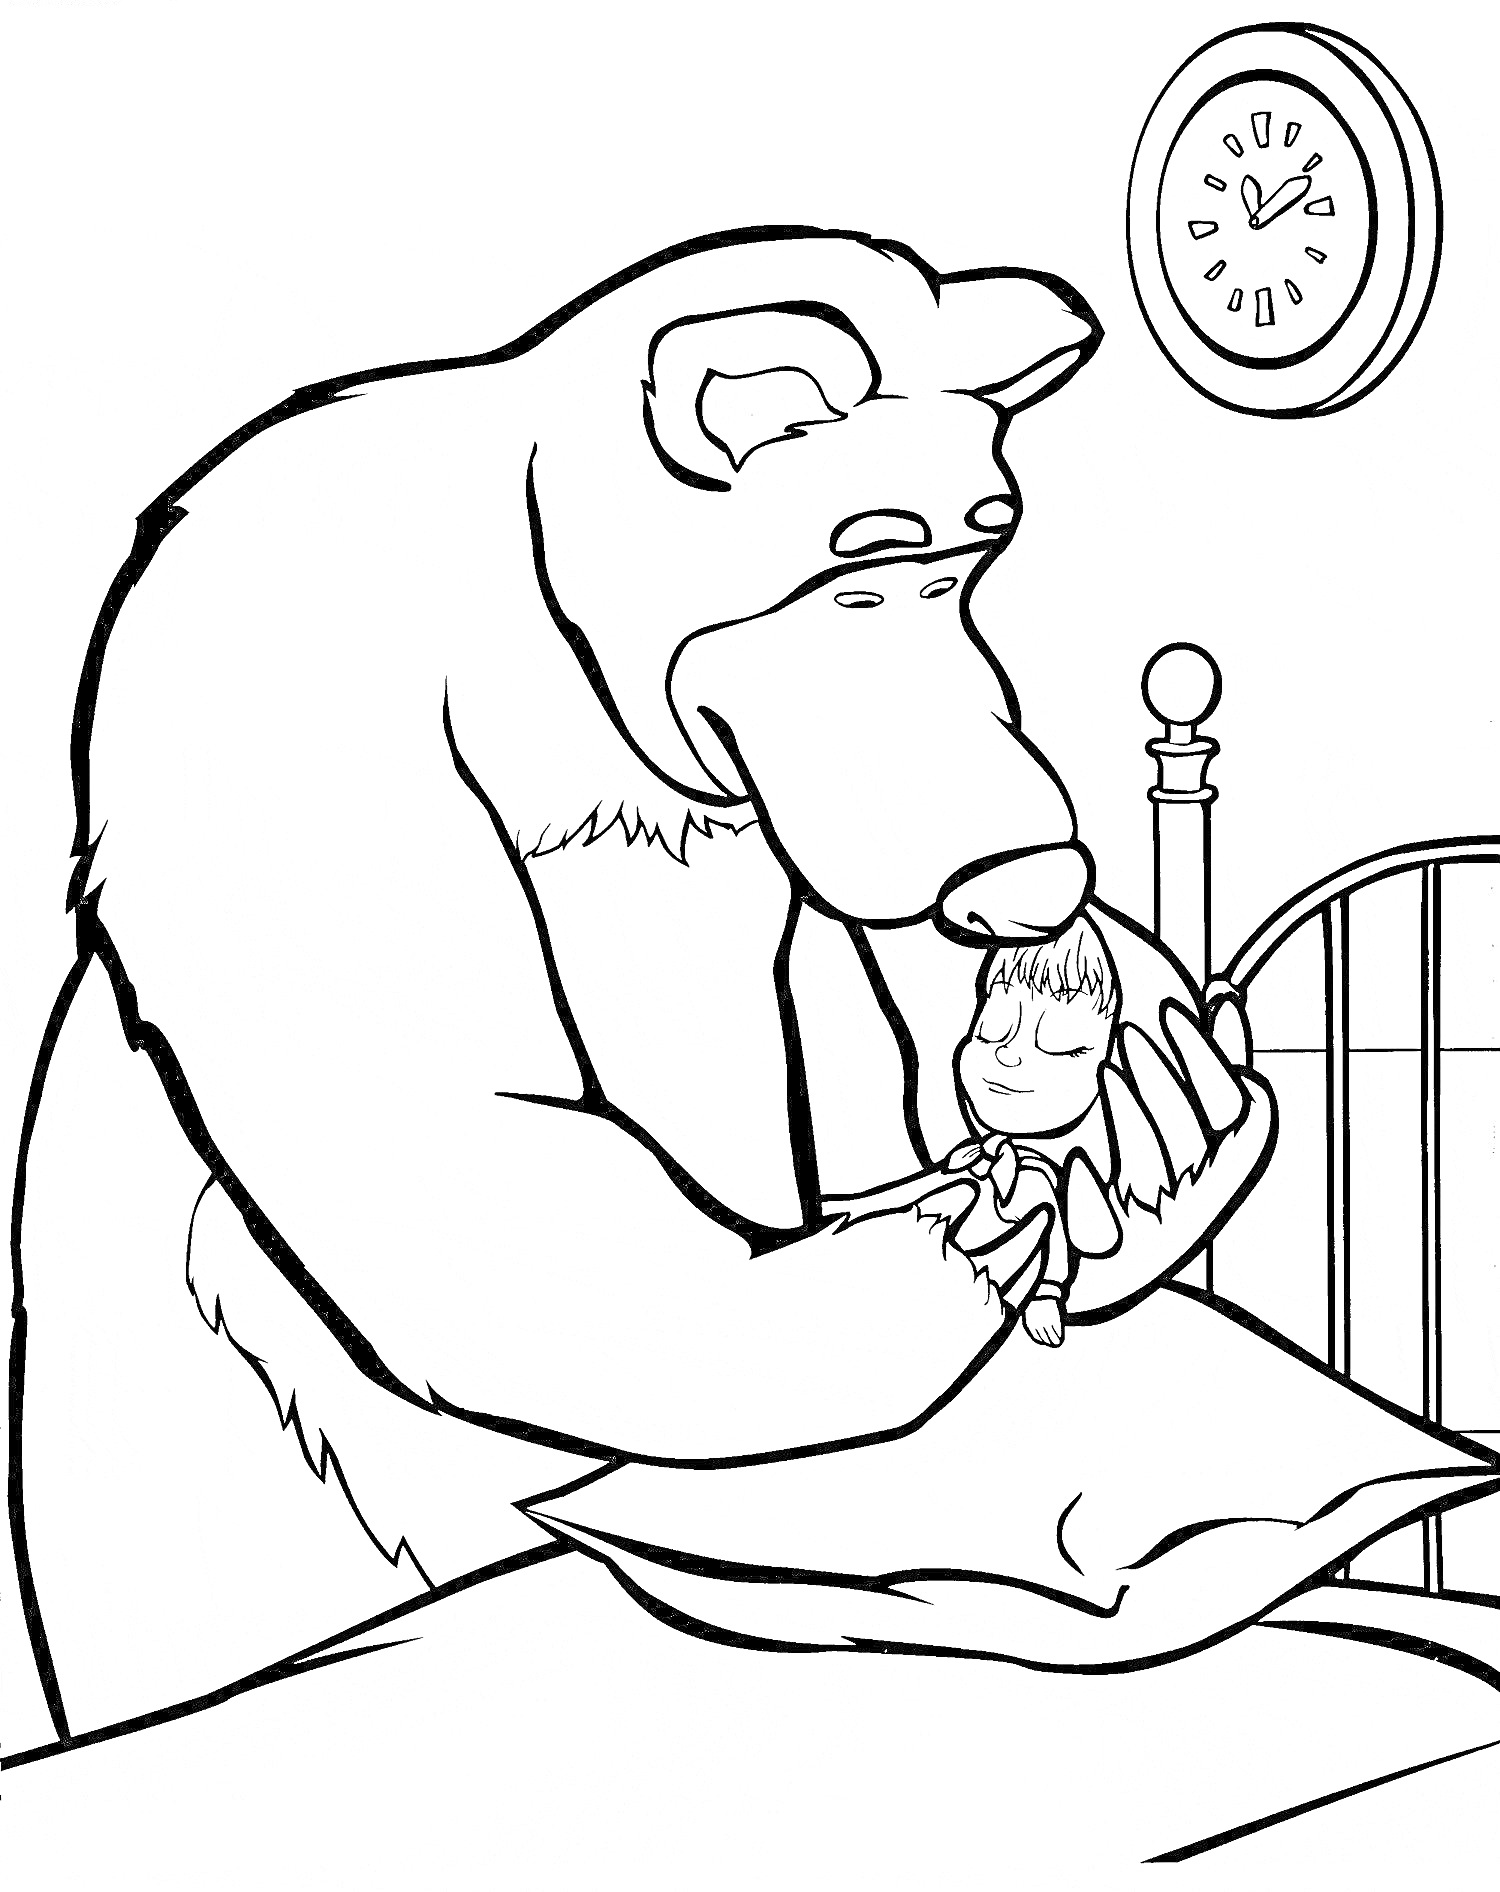 Раскраска Медведь держит Машу на кровати, настенные часы